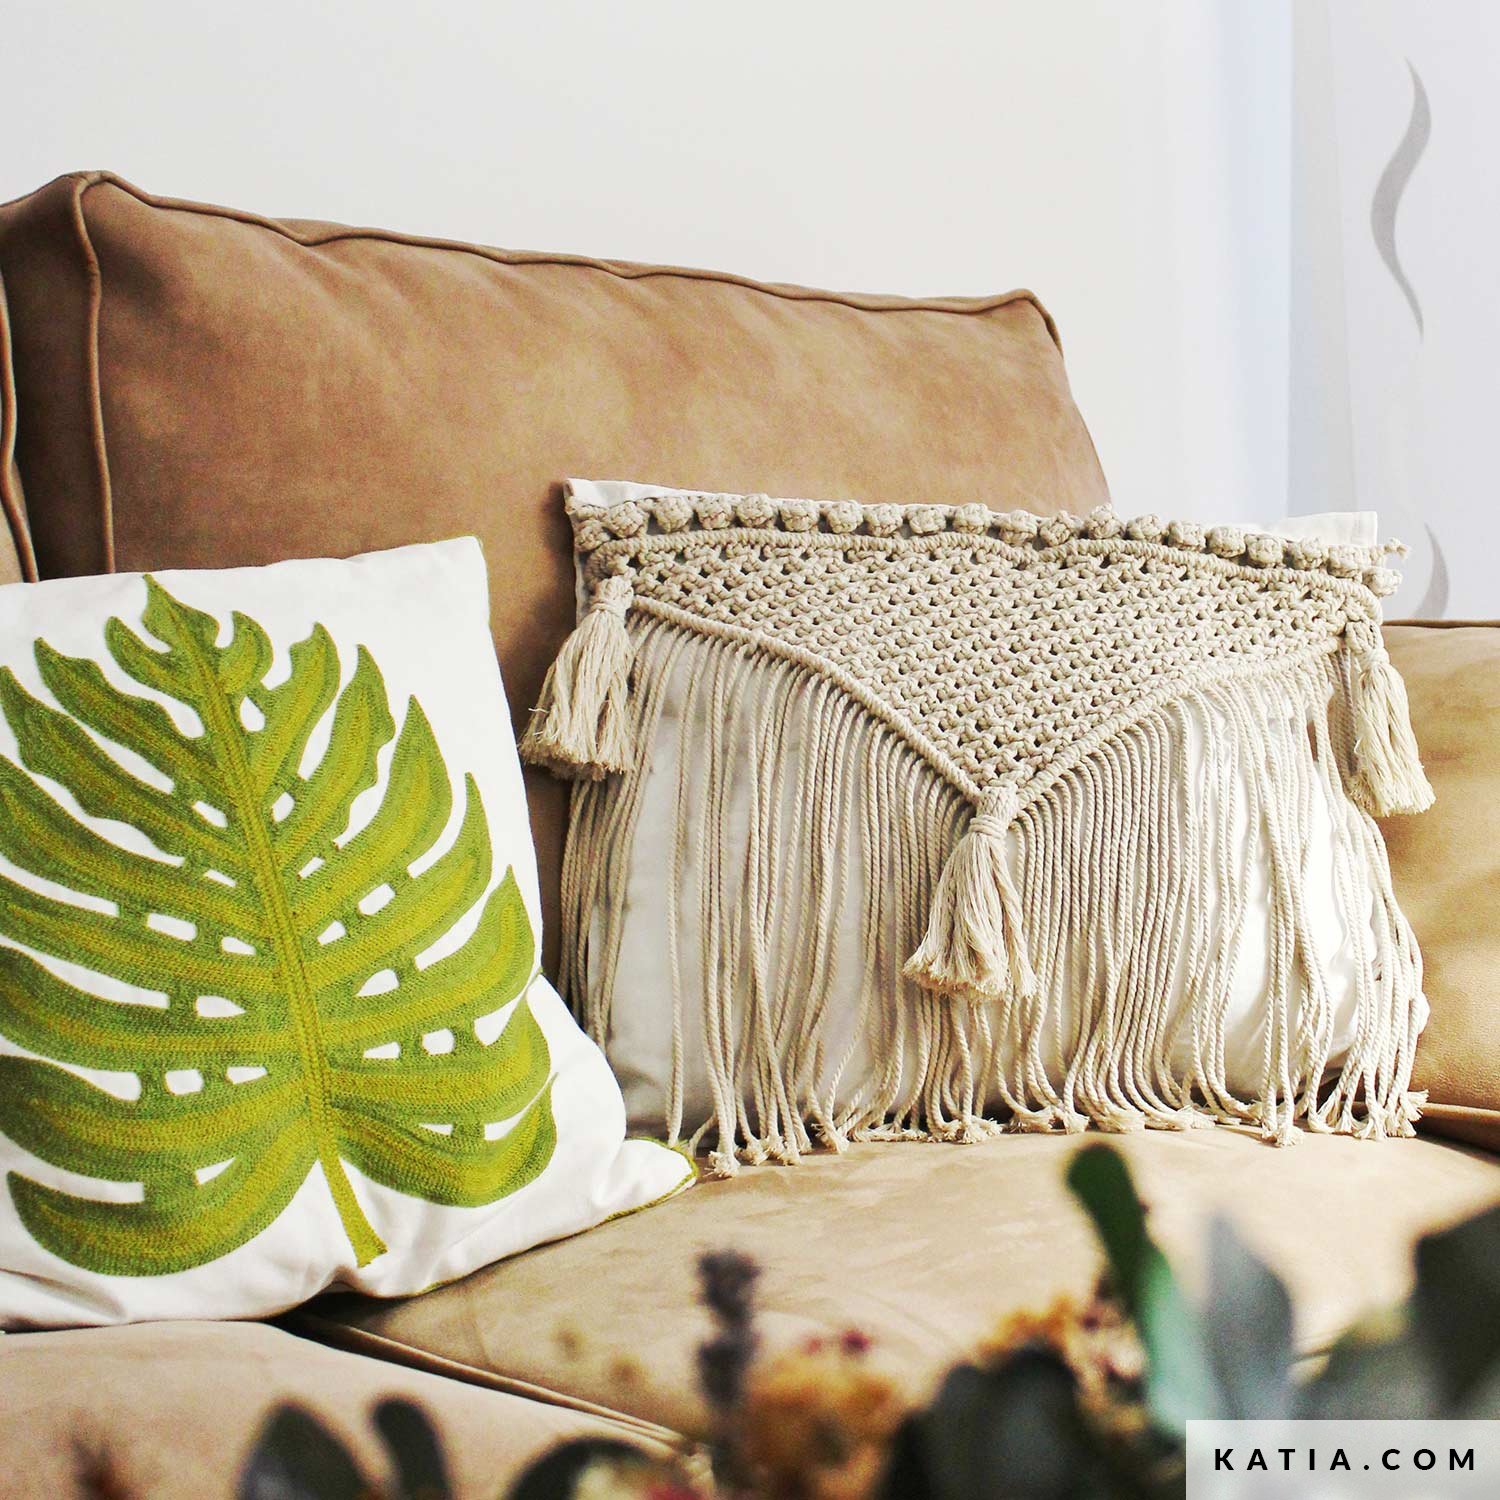 SOPHIE Faux Fur Throw Cushion (50 x 50 cm) - White, Cushions & Throw pillows, Home  Decor